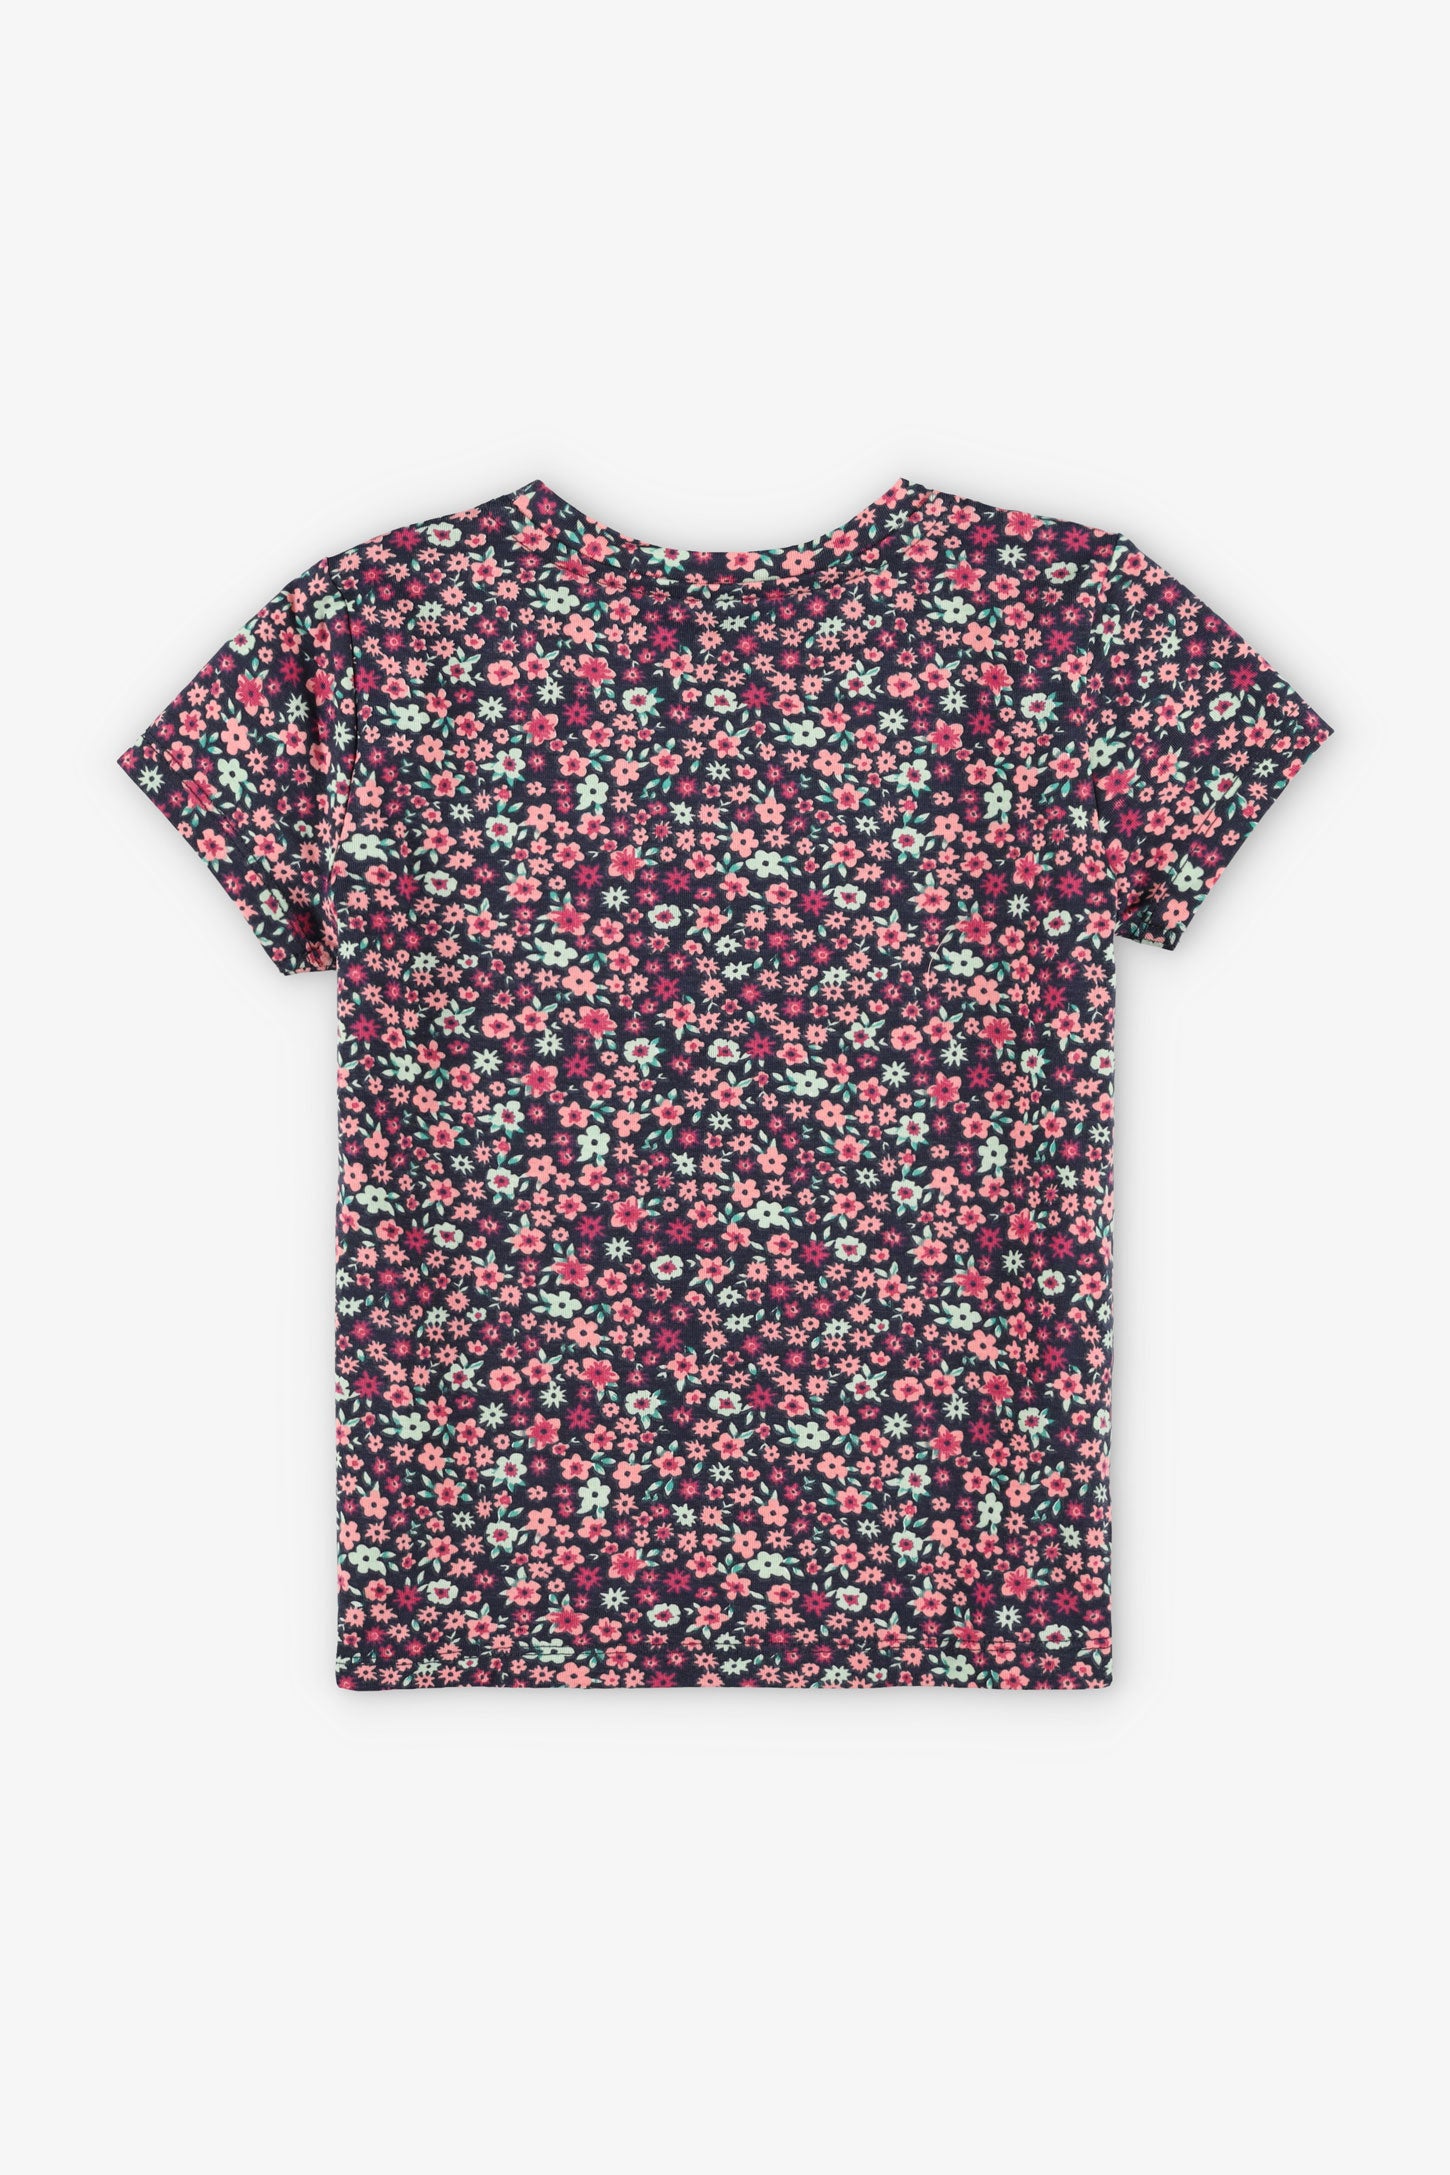 T-shirt imprimé en coton, 2/20$ - Enfant fille && VERT/MULTI